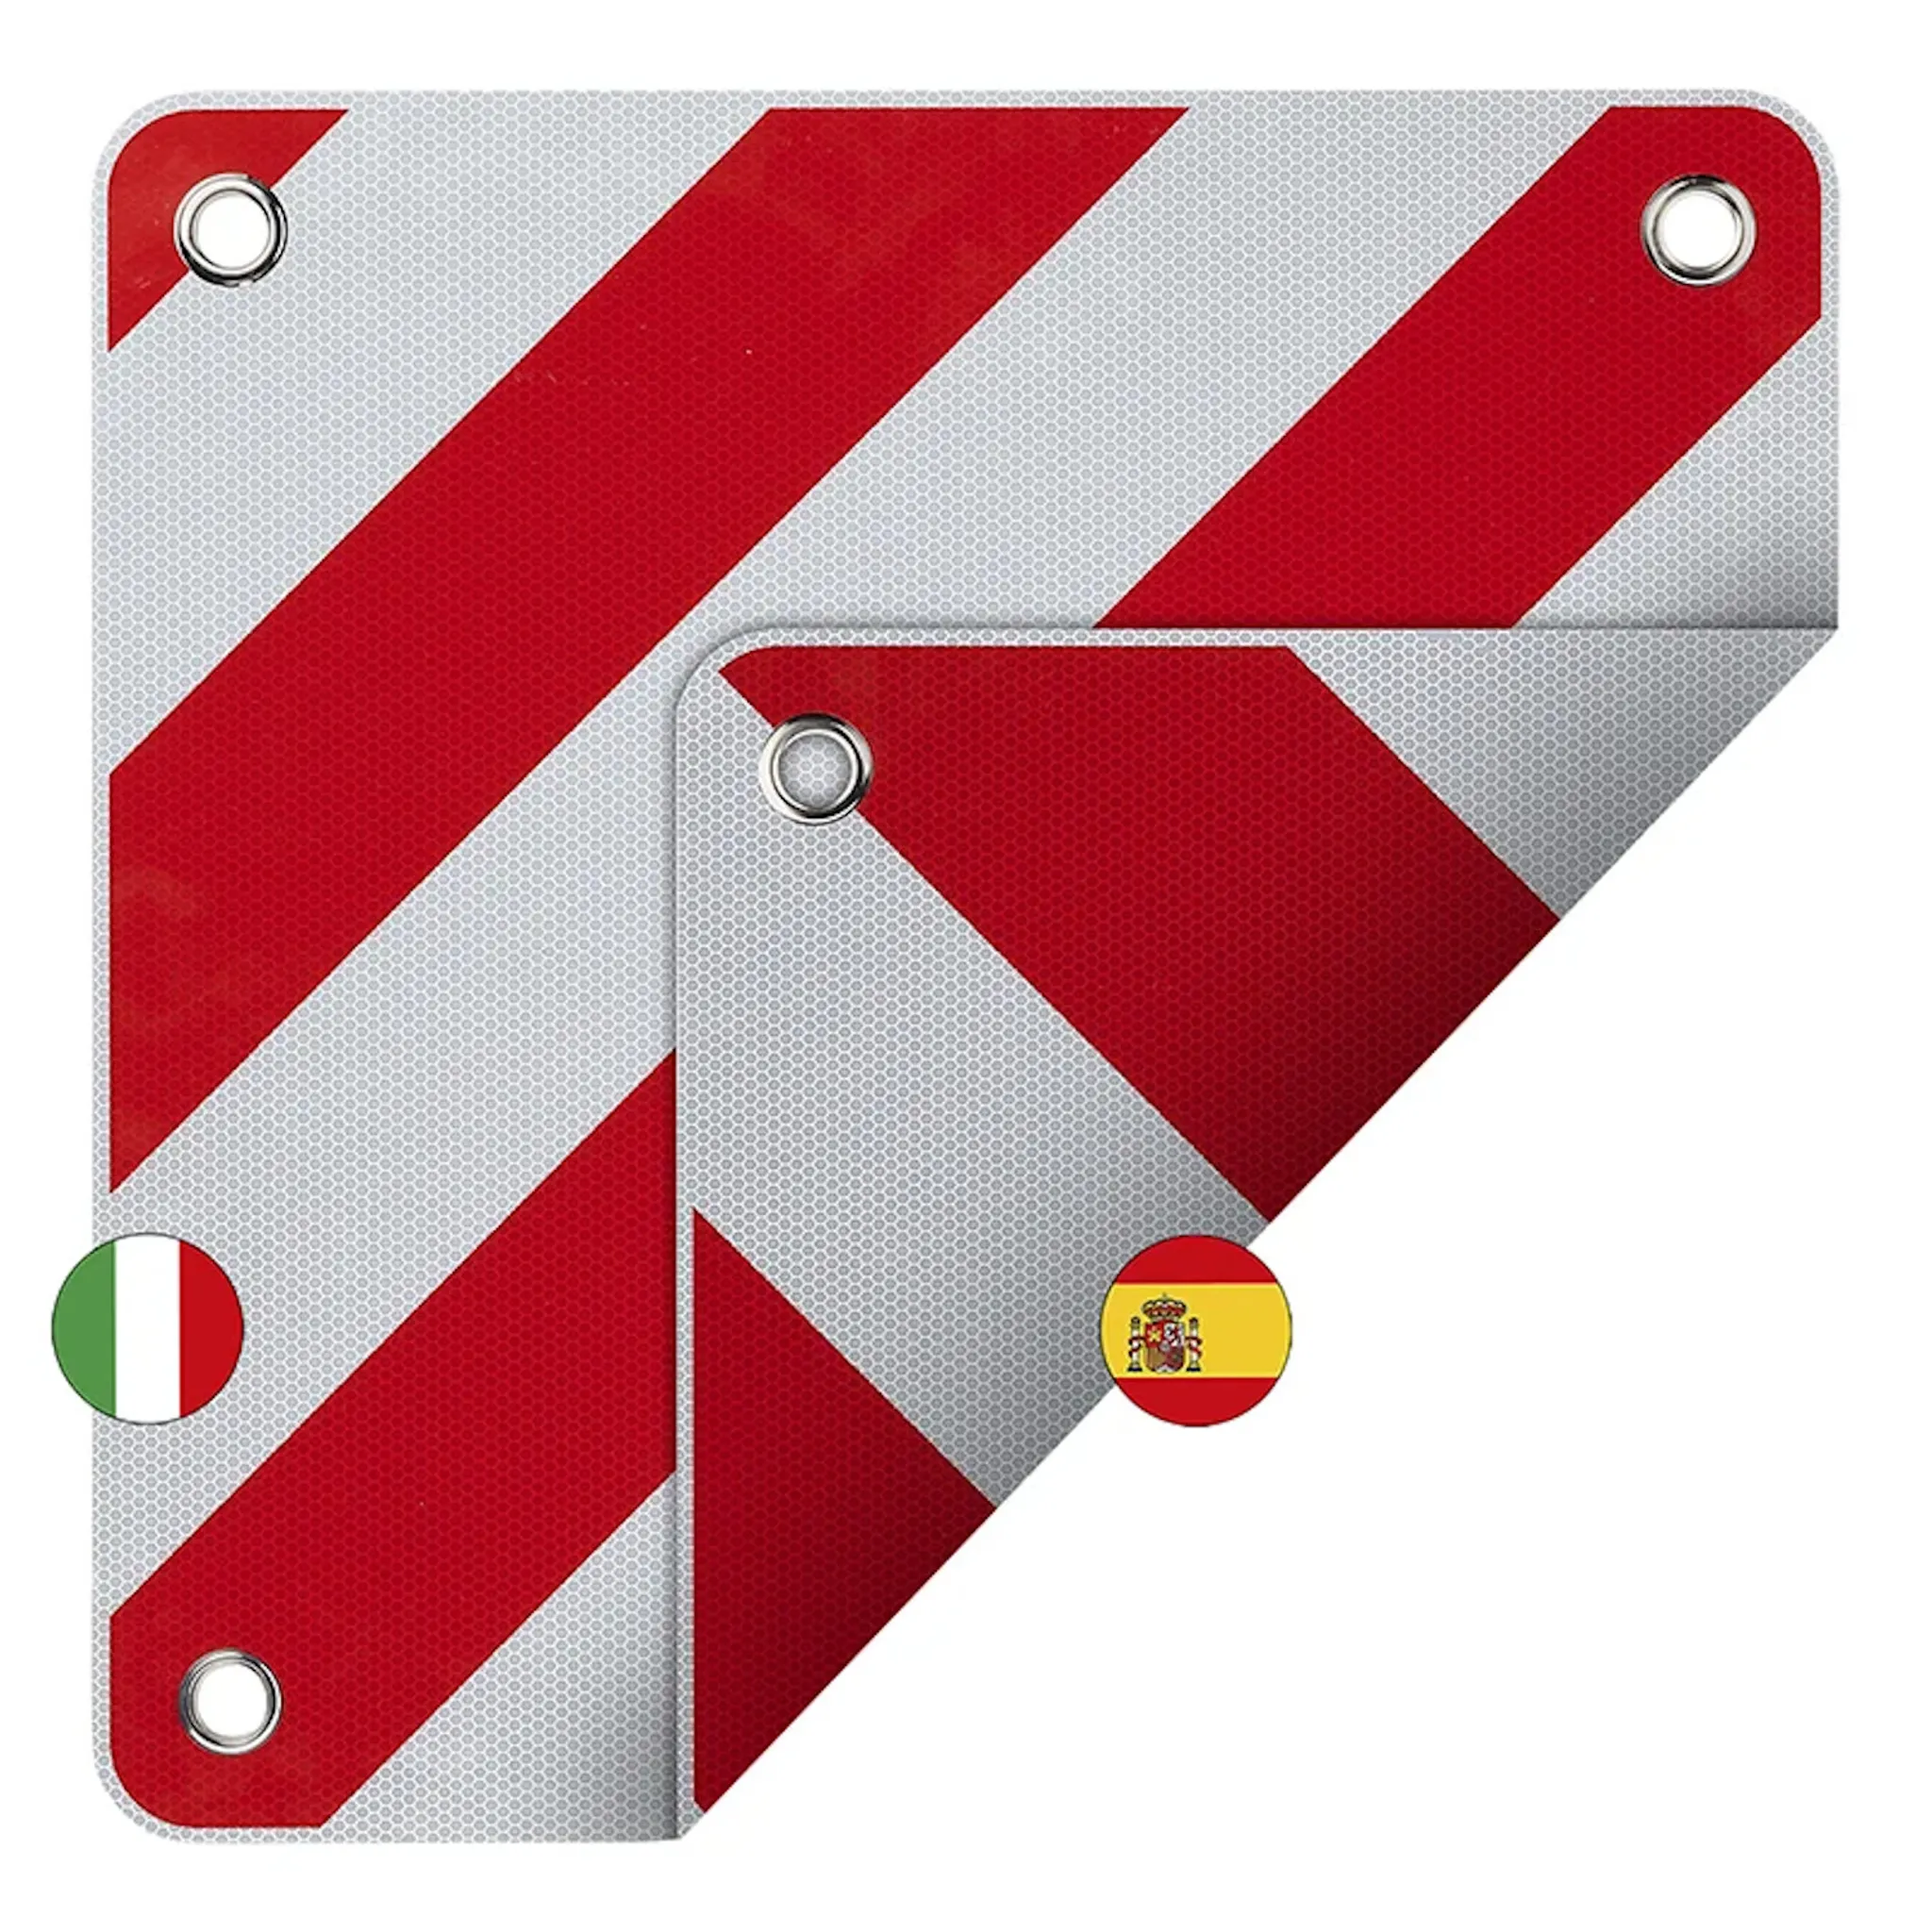 Alu-Warntafel 50x50cm für Italien/Spanien 2 in 1 Reflektierend rot-we,  26,99 €